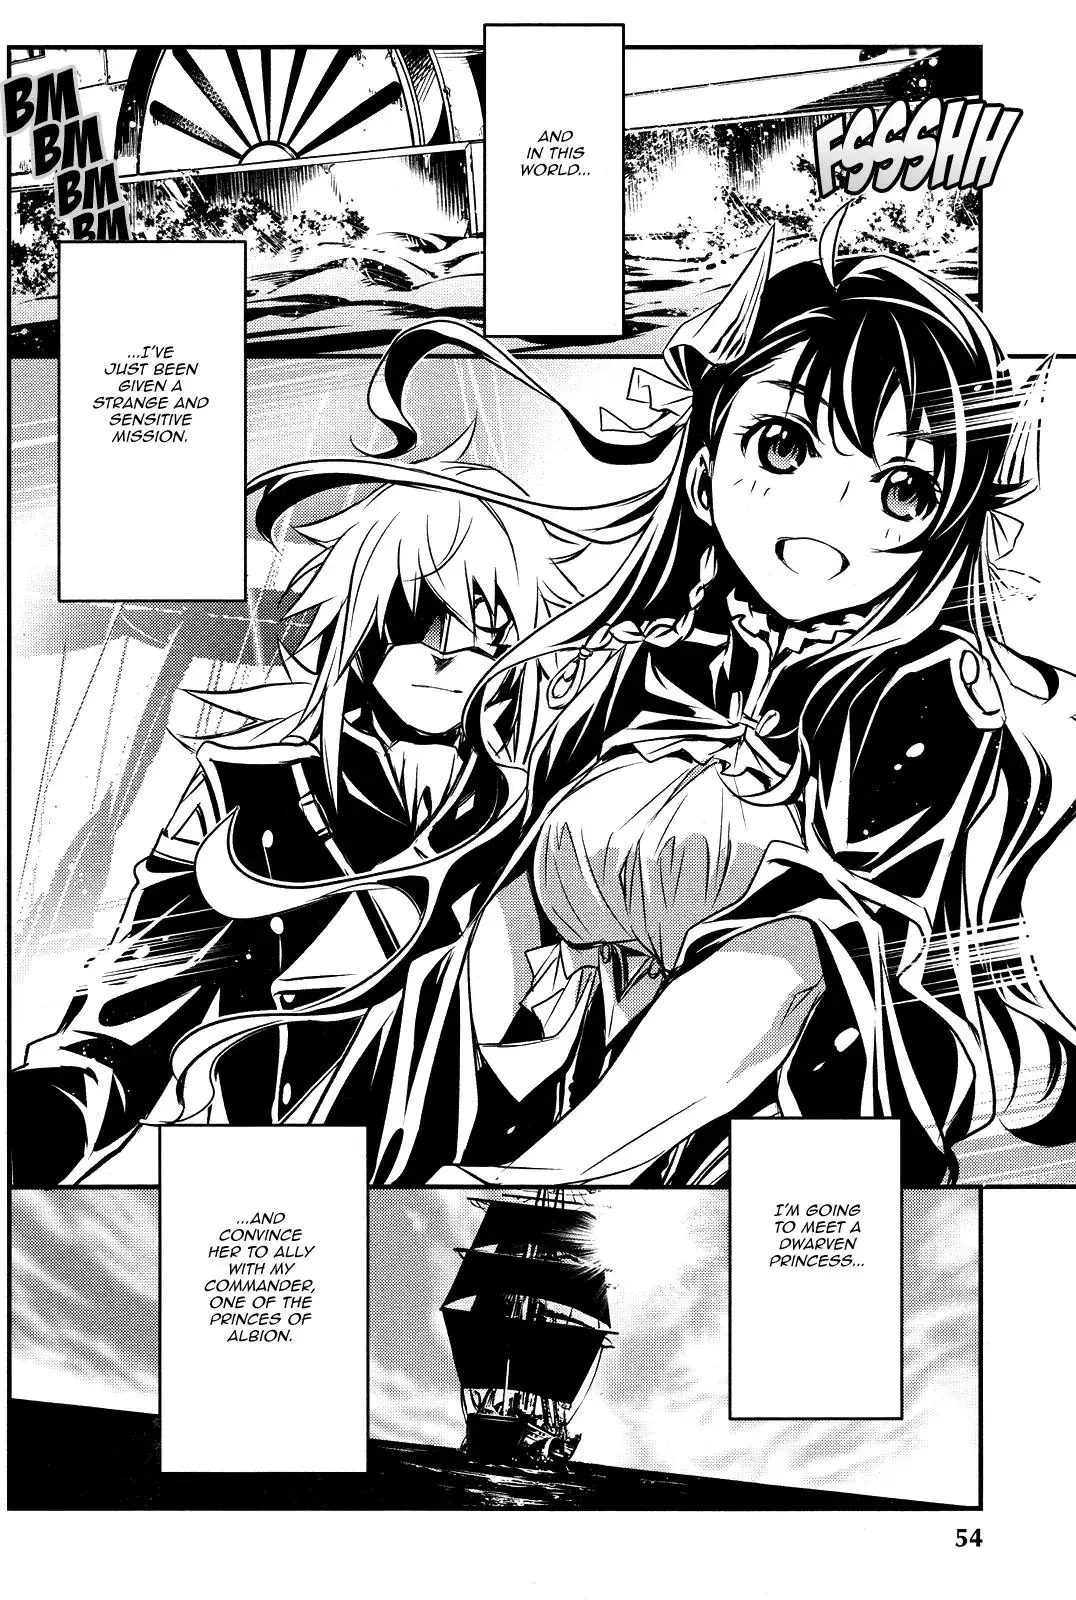 Shinju no Nectar - 9 page 2